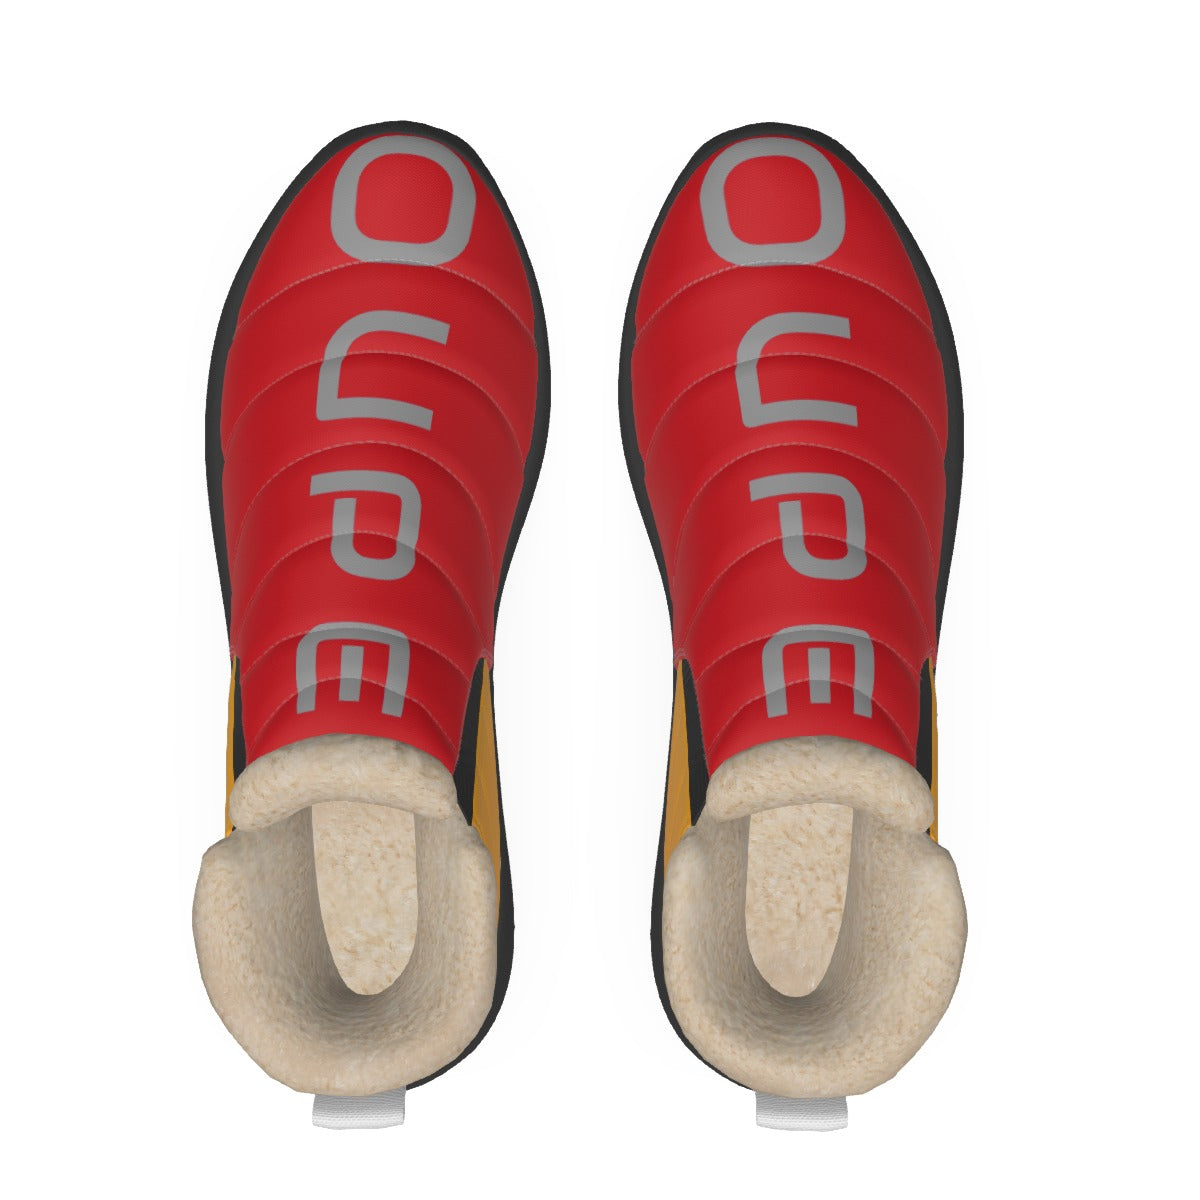 OUPE Men's Plush Boots